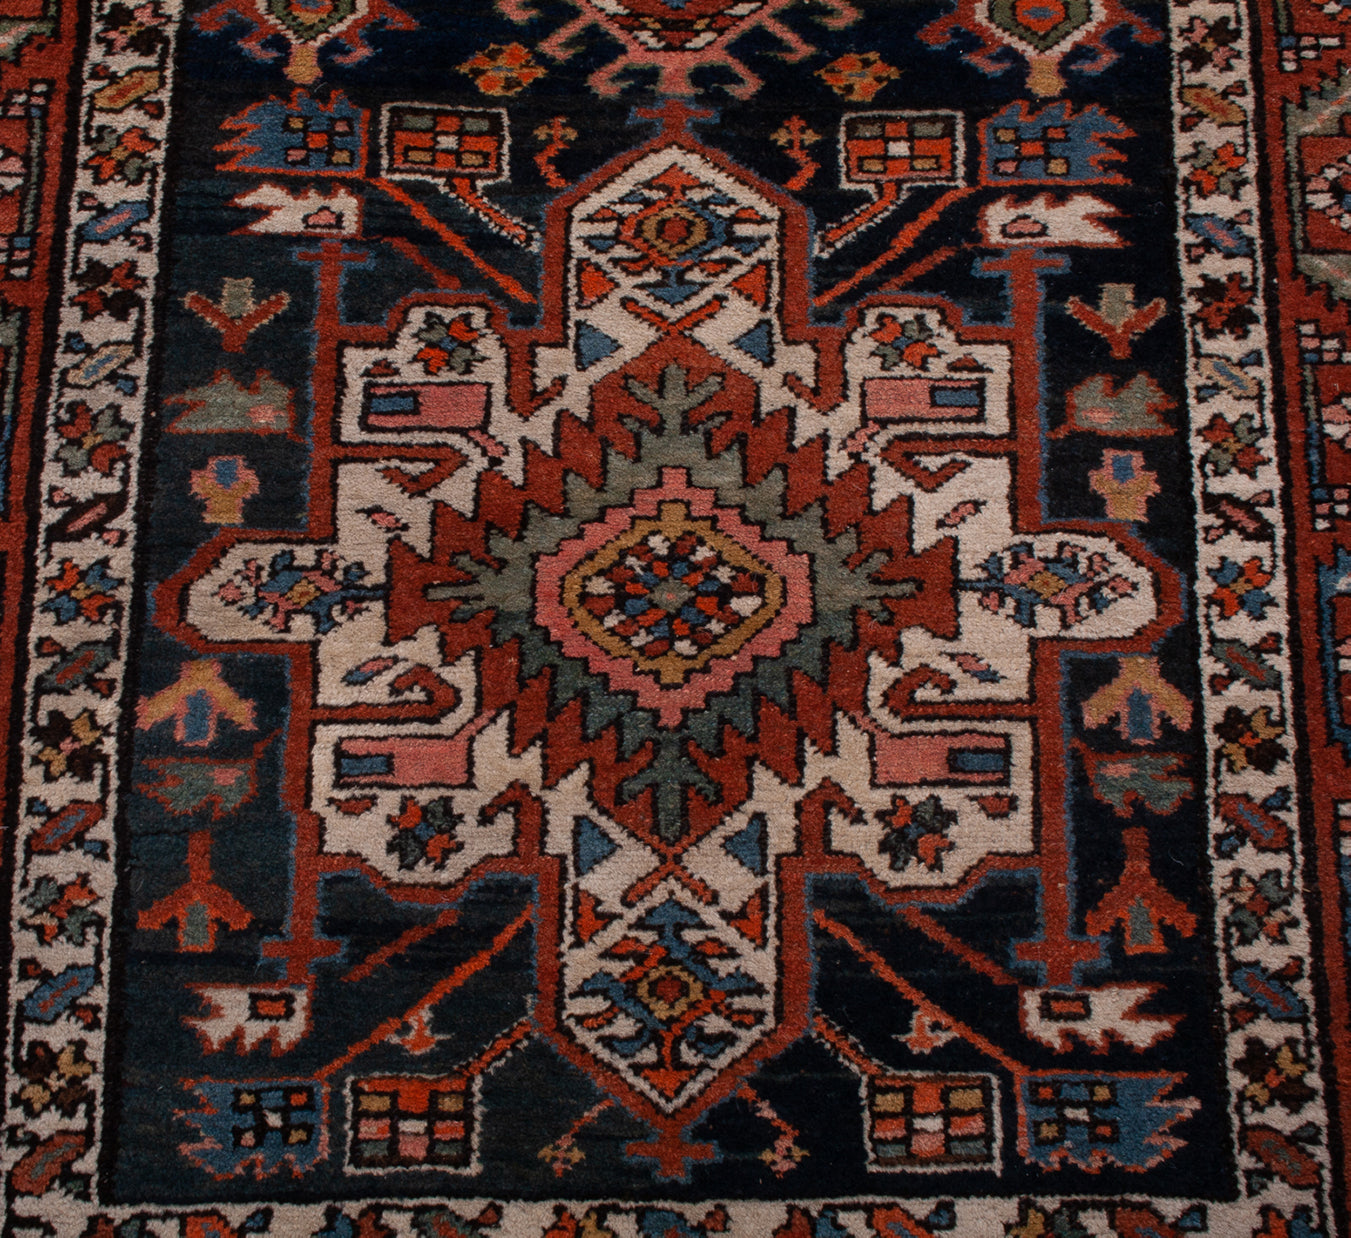 Antique Persian Hamedan Rug